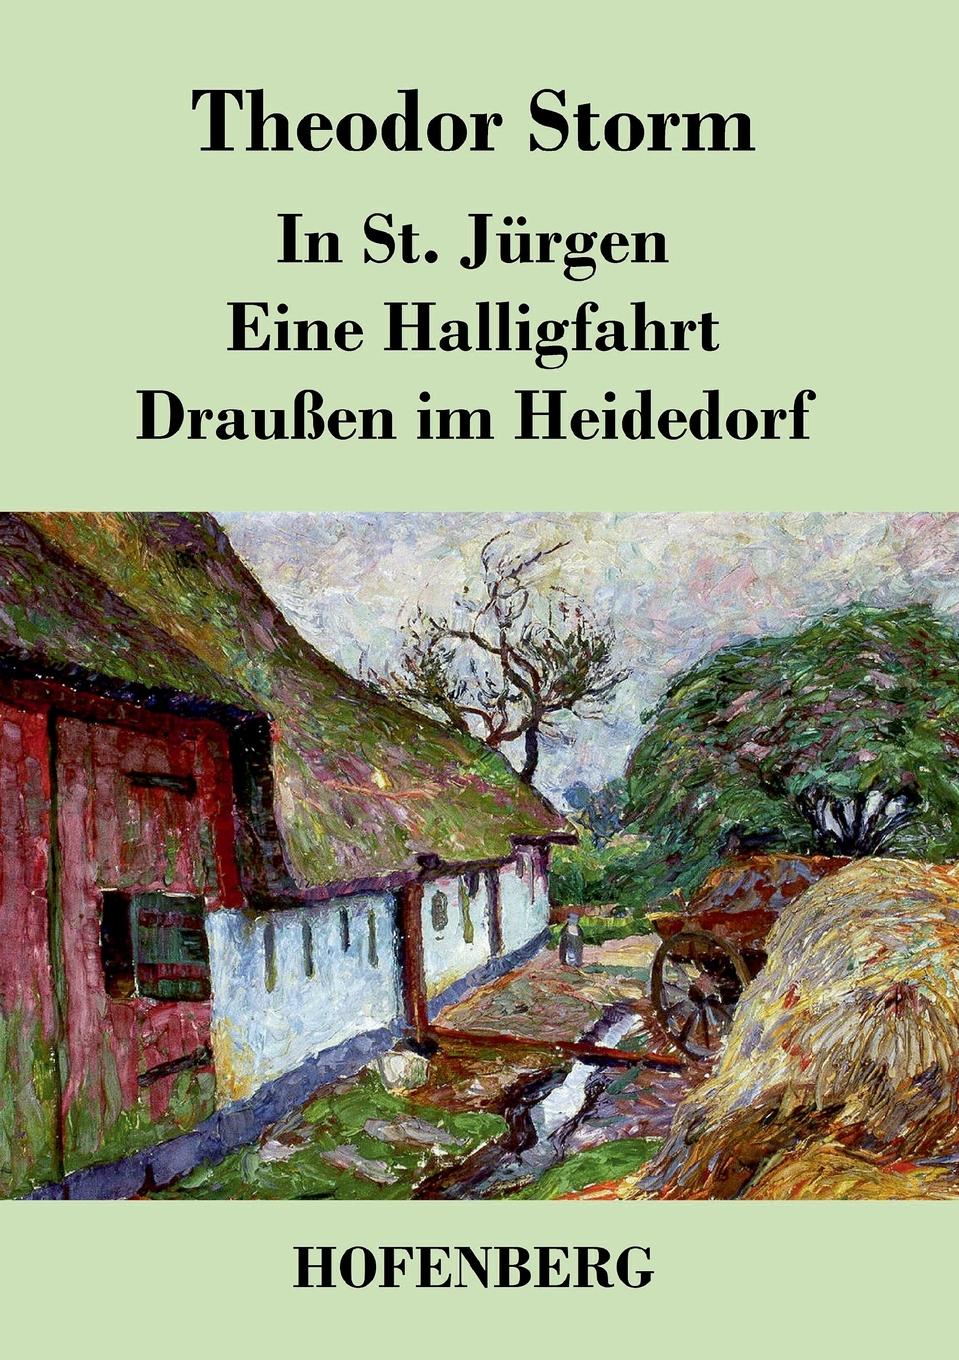 Theodor Storm In St. Jurgen / Eine Halligfahrt / Draussen im Heidedorf